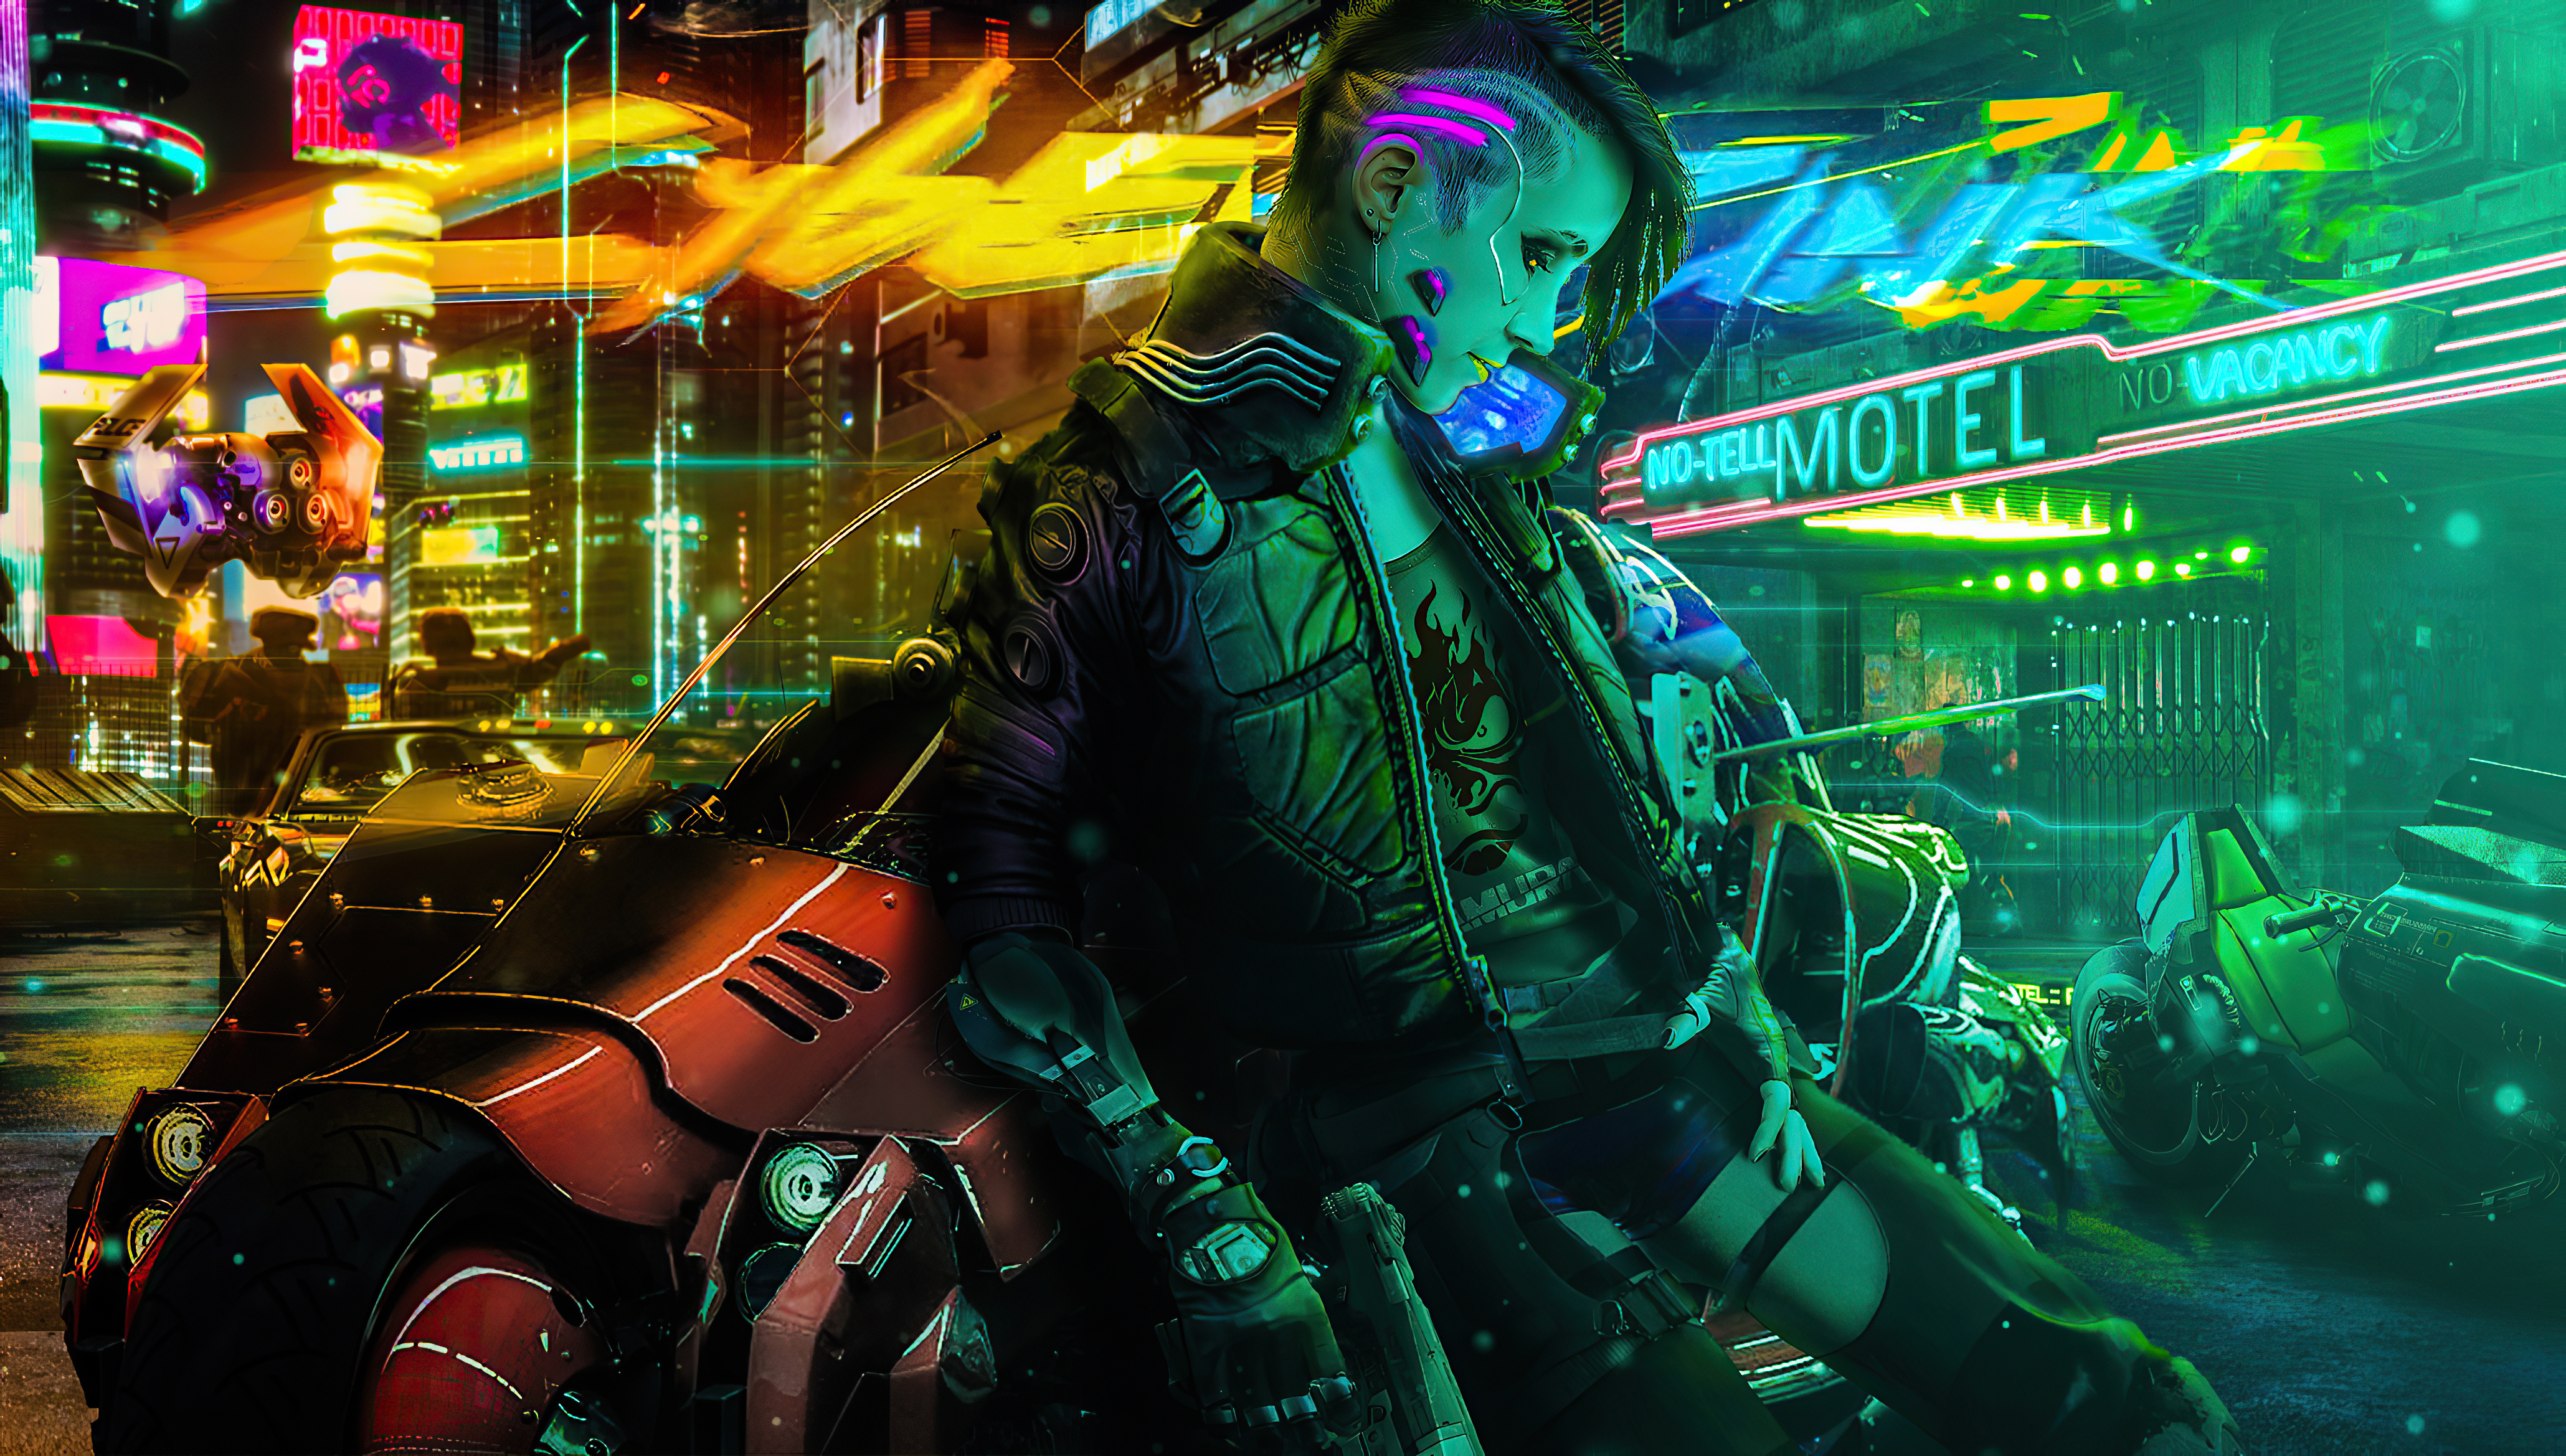 Cyberpunk Girl Biker New 2020, HD Artist, 4k Wallpapers, Images